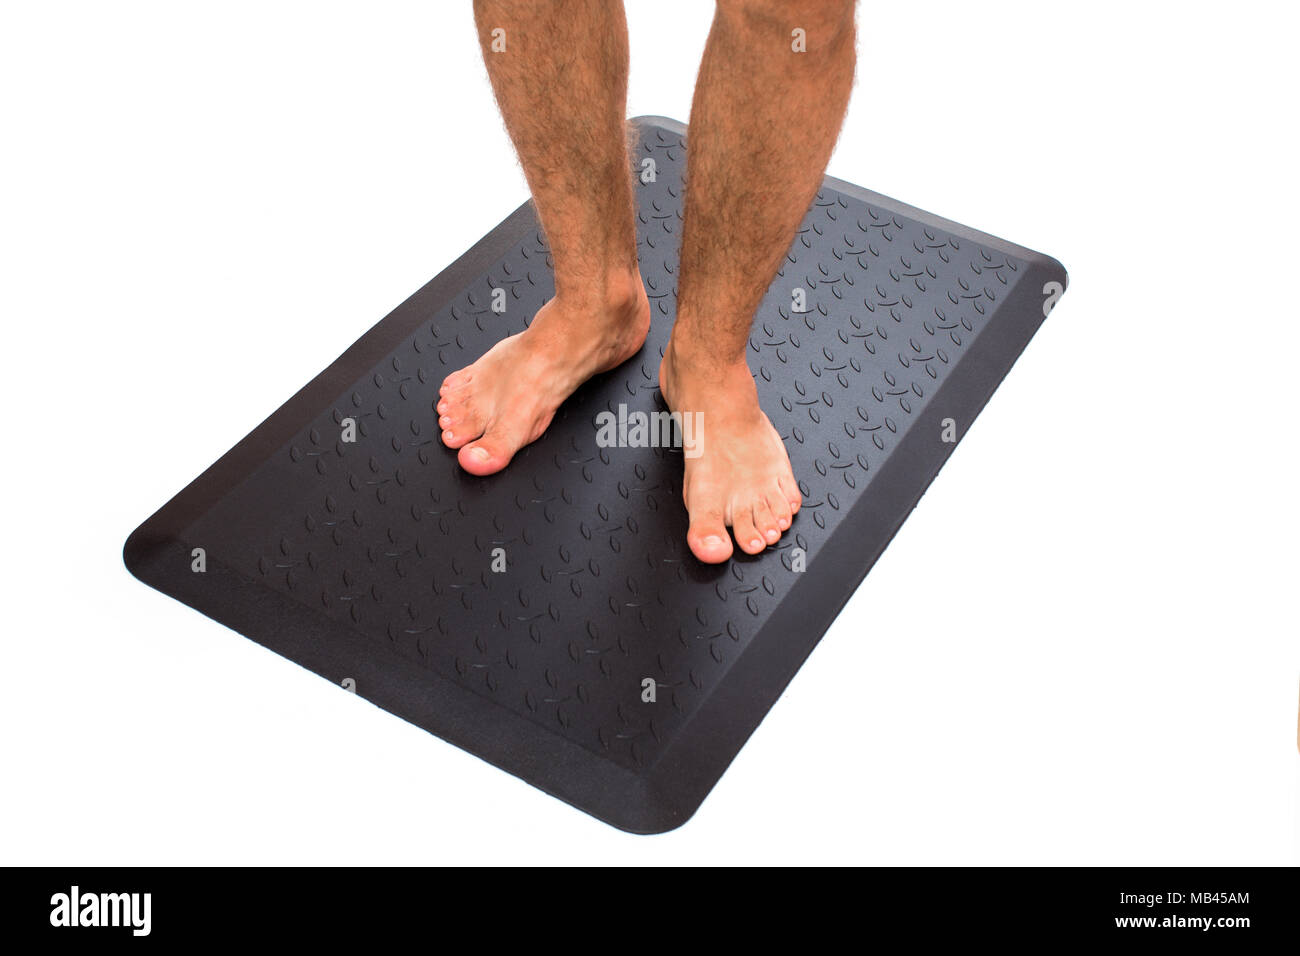 Schwarze Fußmatte mit barfuß Stehen Stockfotografie - Alamy